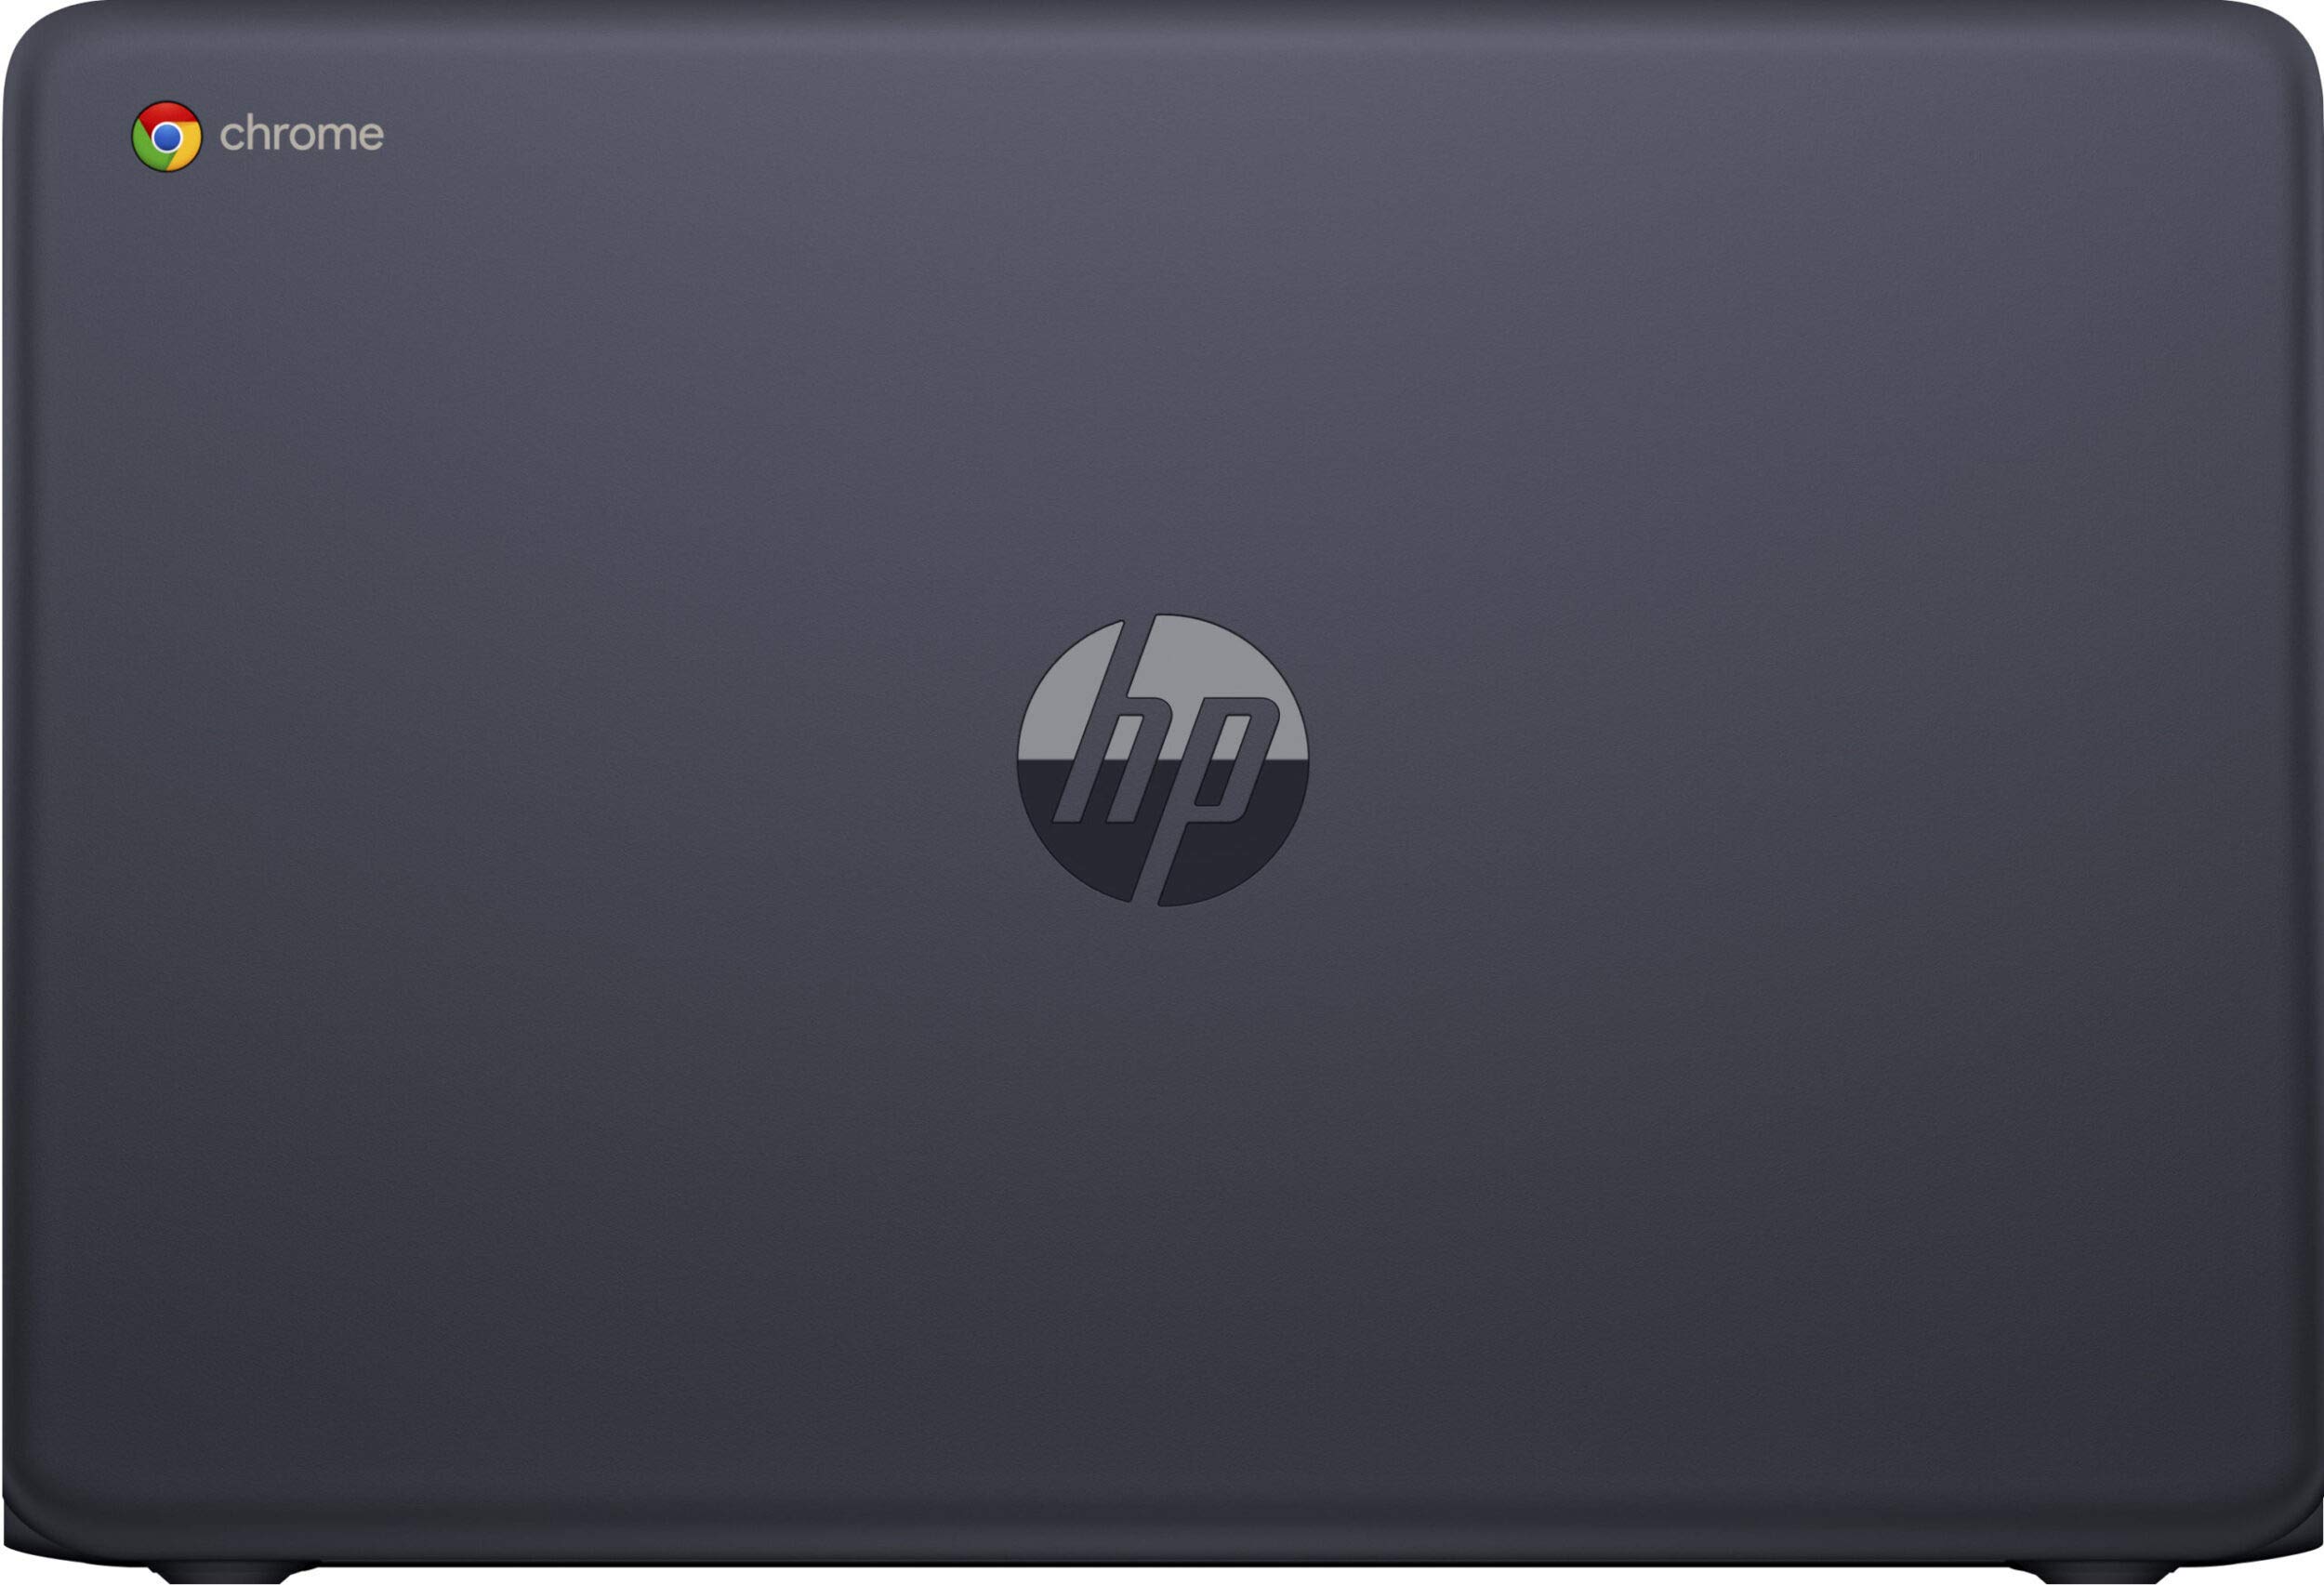 HP Chromebook 14 AMD A4-9120 32GB eMMC 4GB RAM Wi-Fi HDMI 14-db0031nr Navy